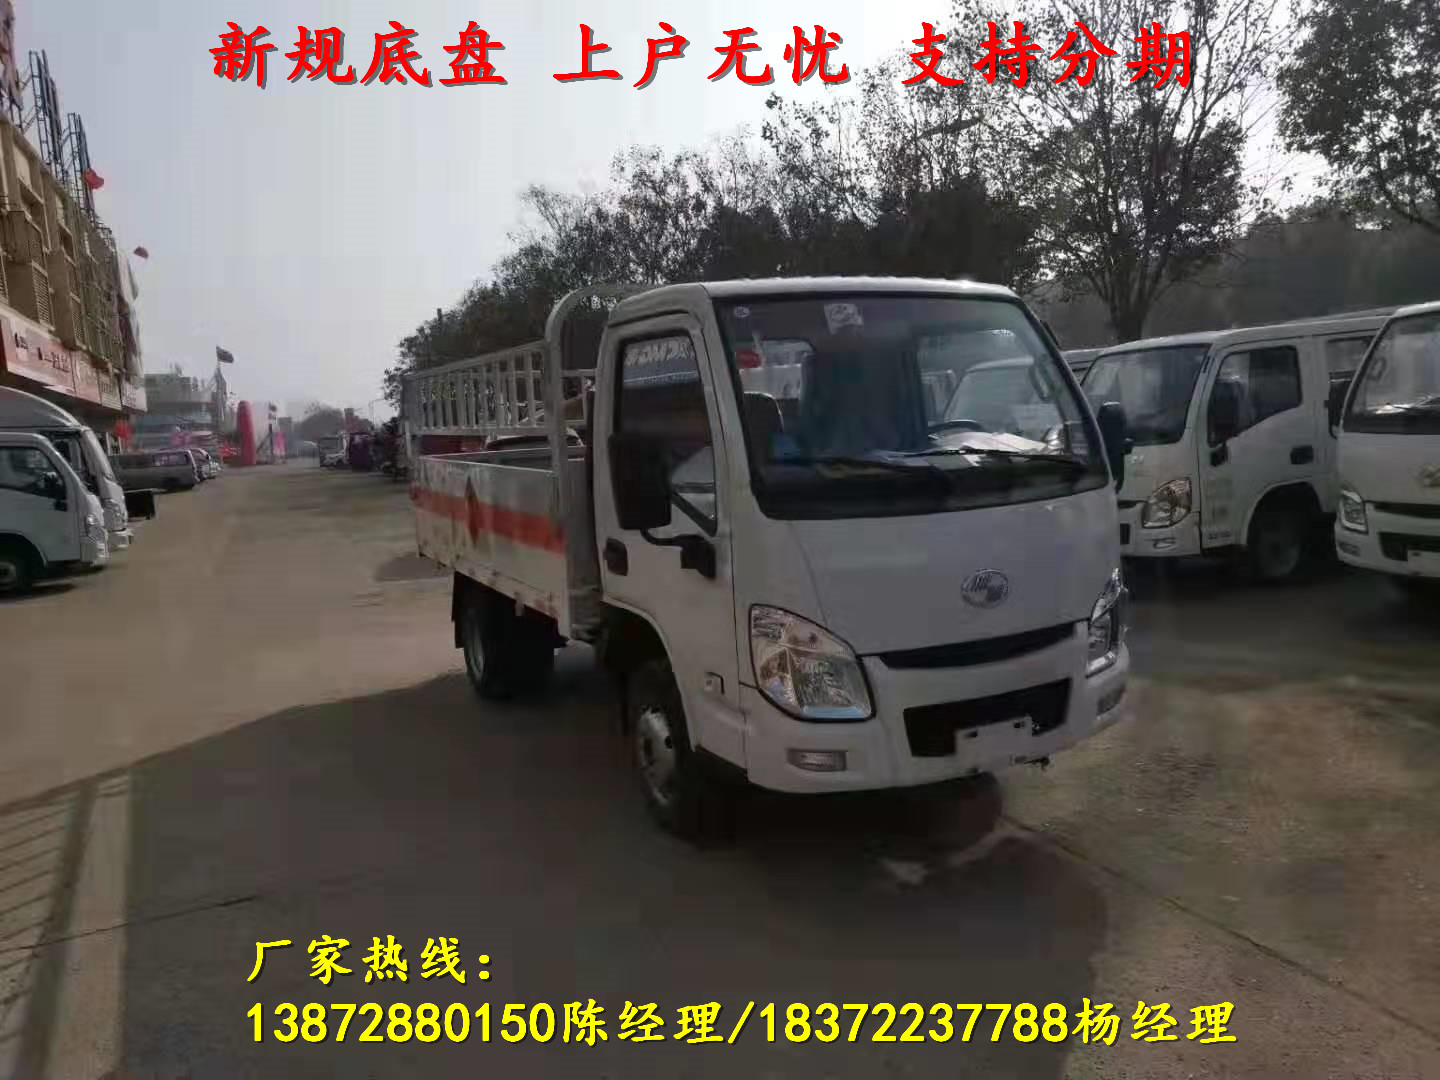 广州江淮6.2米气瓶运输车具体要求